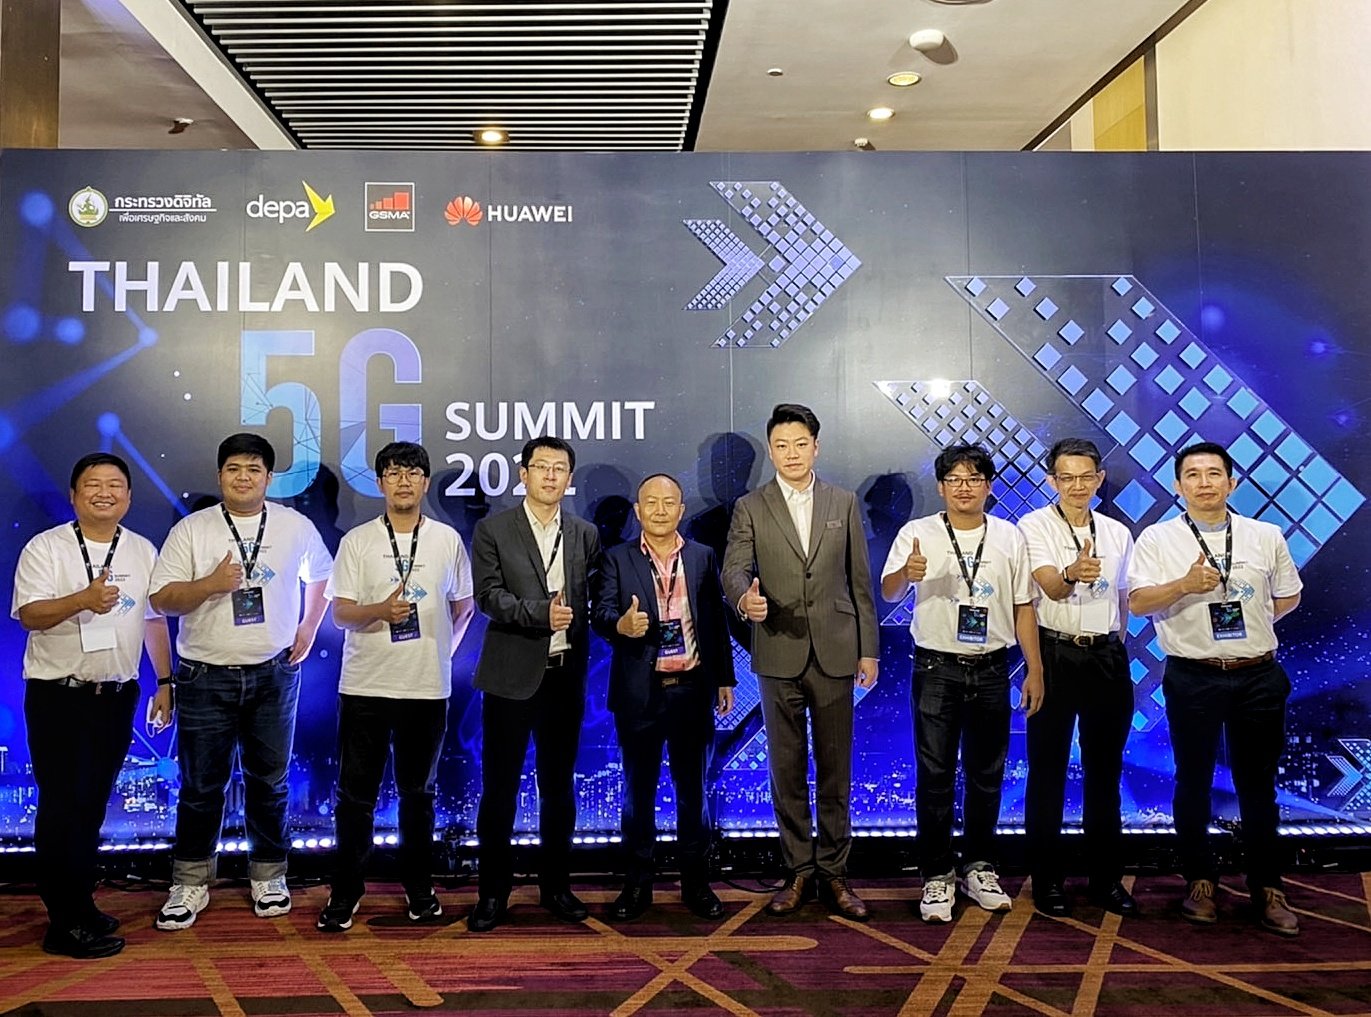 Thailand 5G Summit 2022